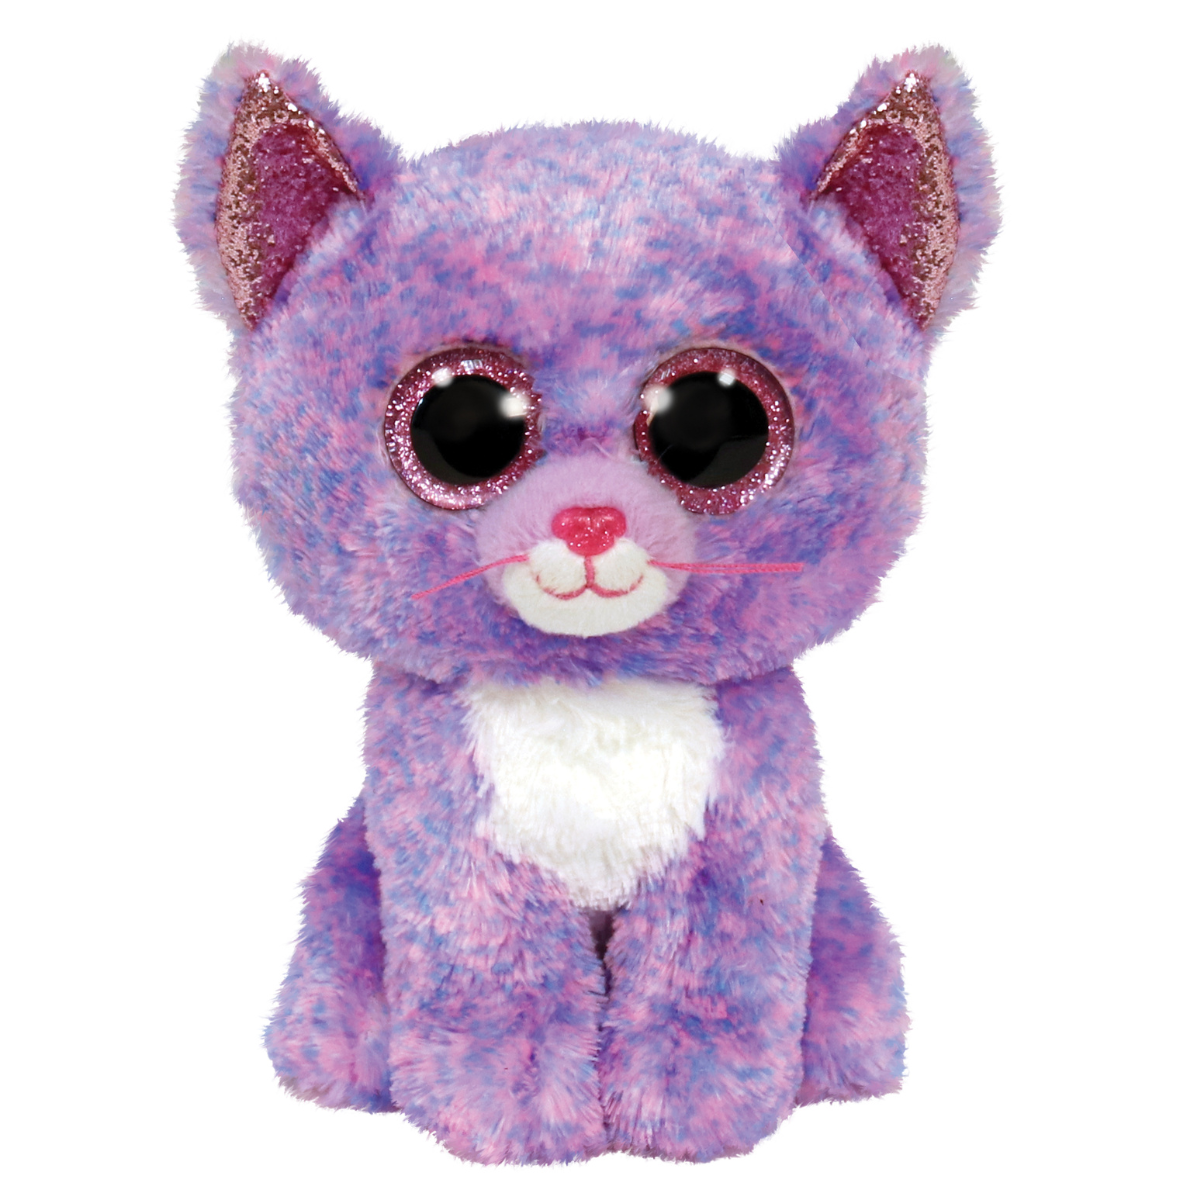 Ty - peluche - beanie boos - gatto - cassidy - rosa e viola - orecchie e occhi rosa glitter - il peluche con gli occhi grandi scintillanti - 15 cm - 36248 - TY